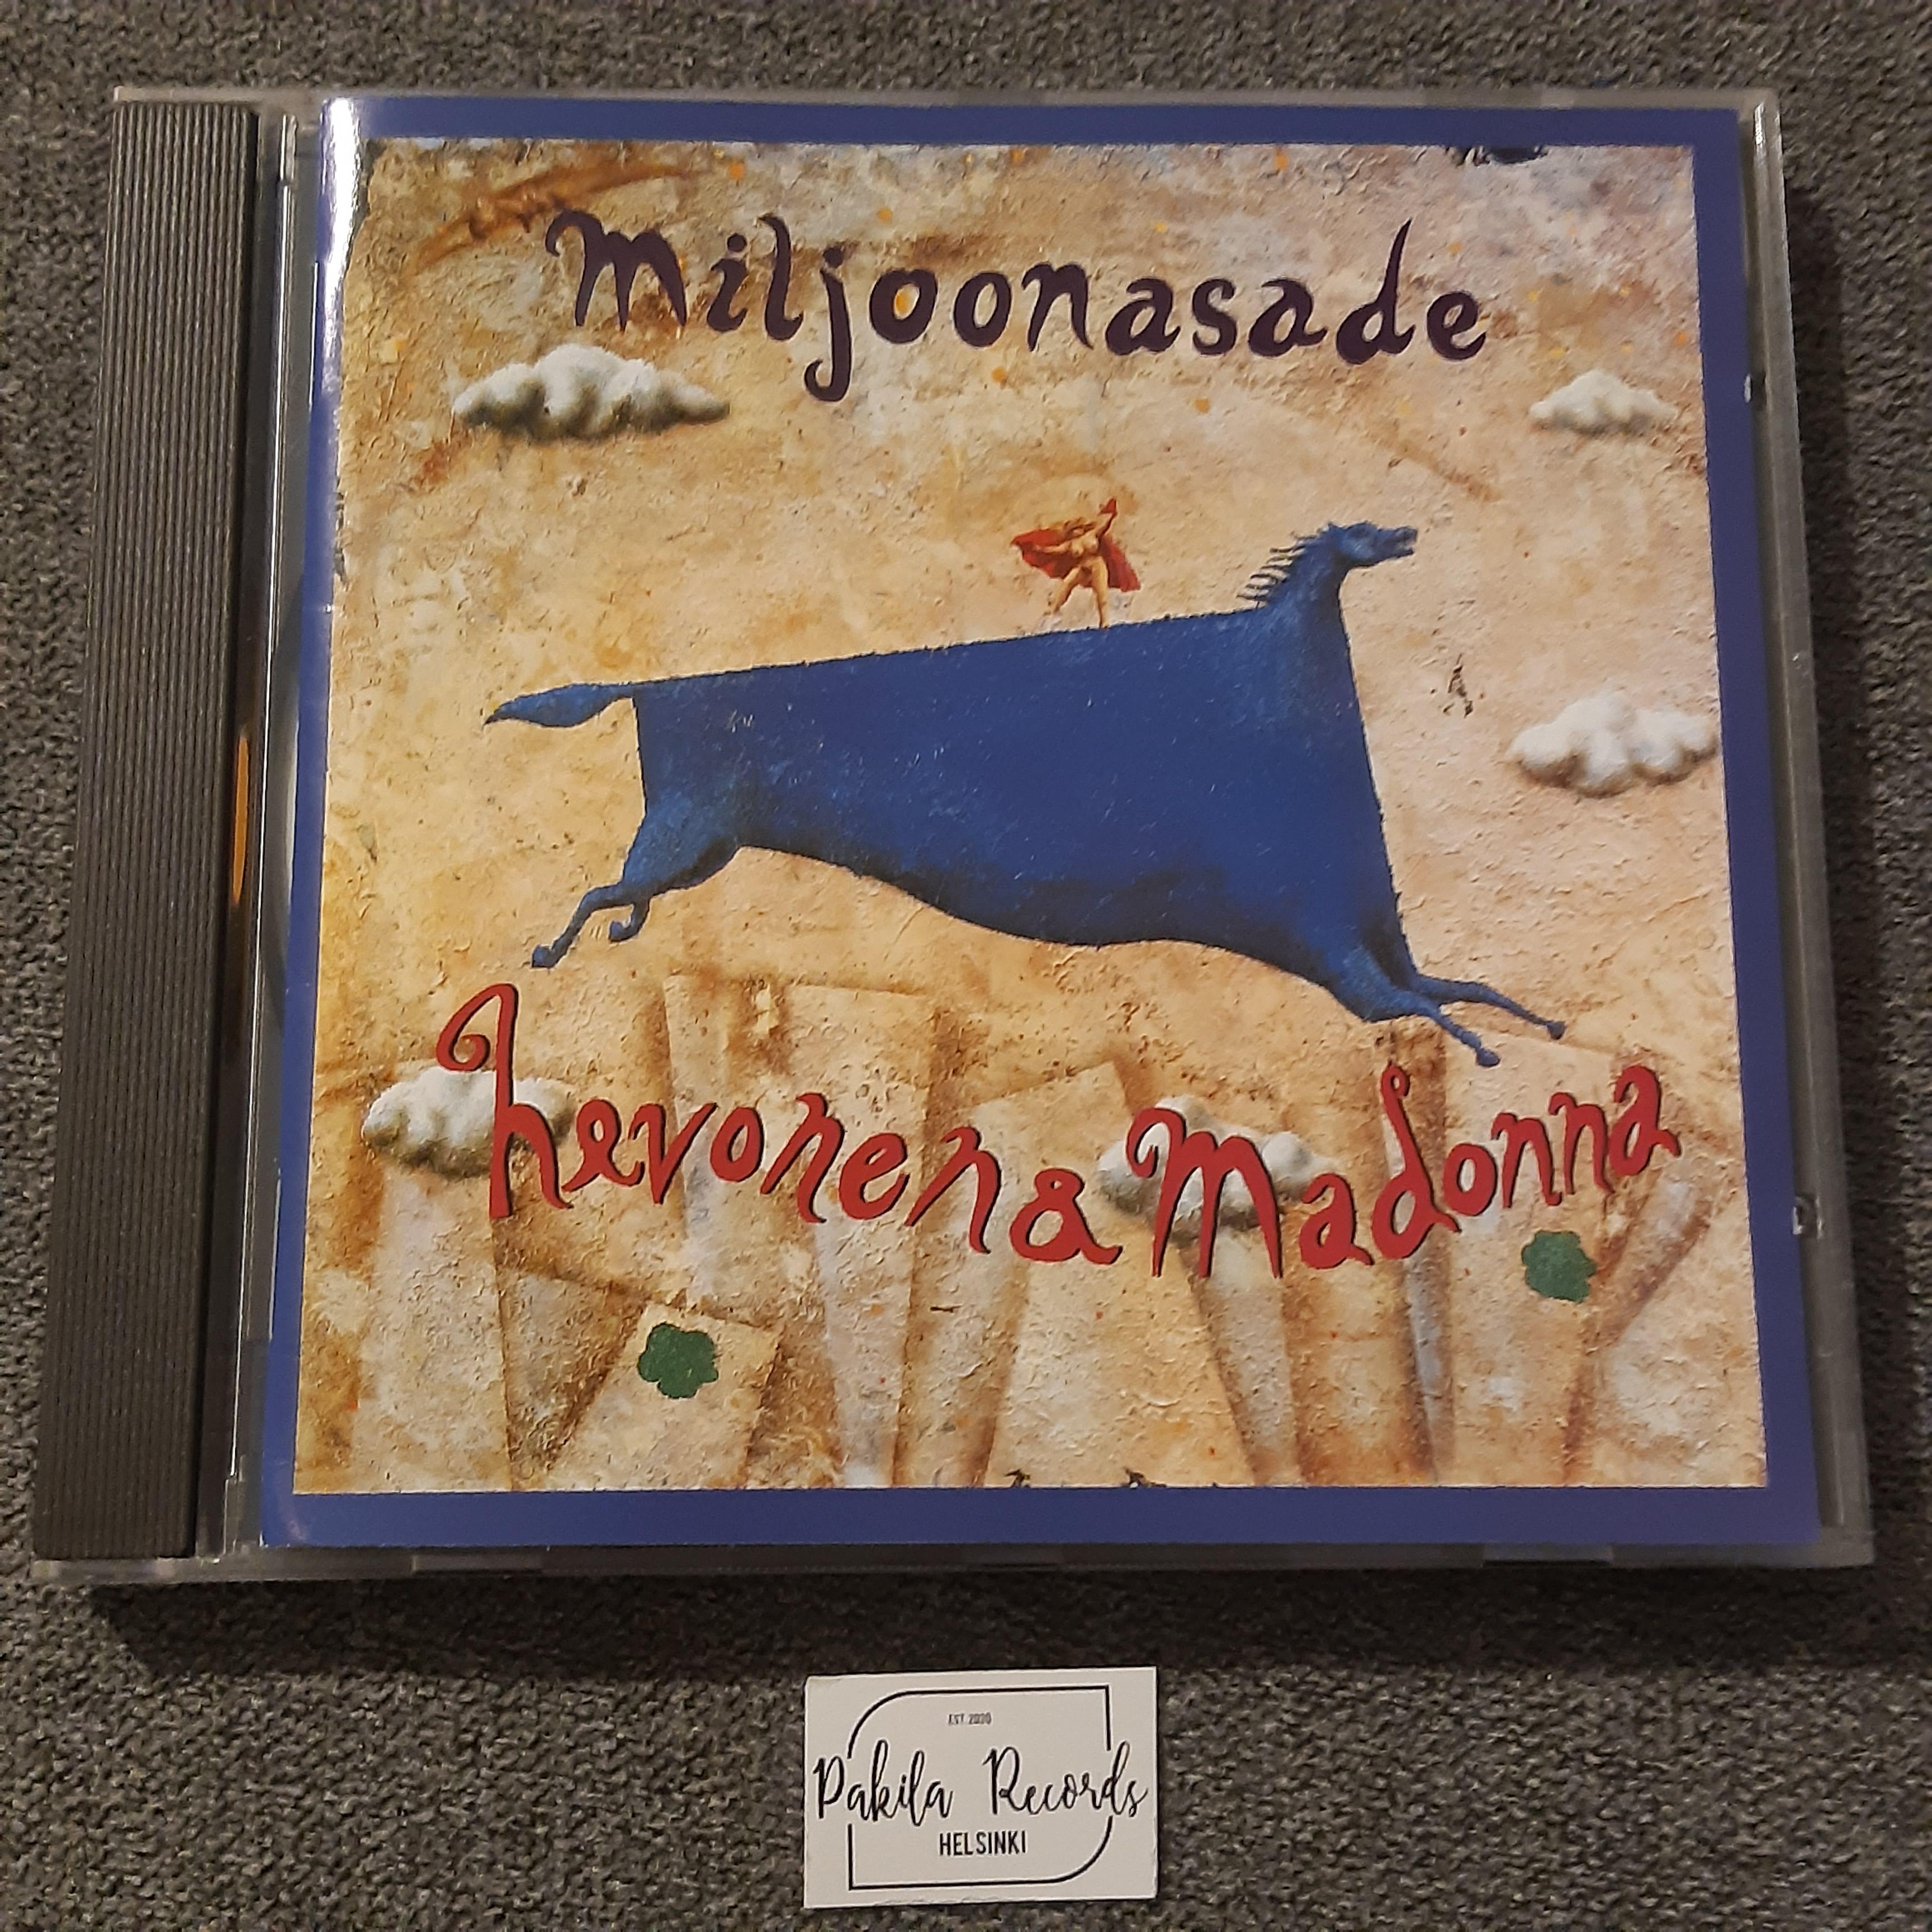 Miljoonasade - Hevonen & Madonna - CD (käytetty)